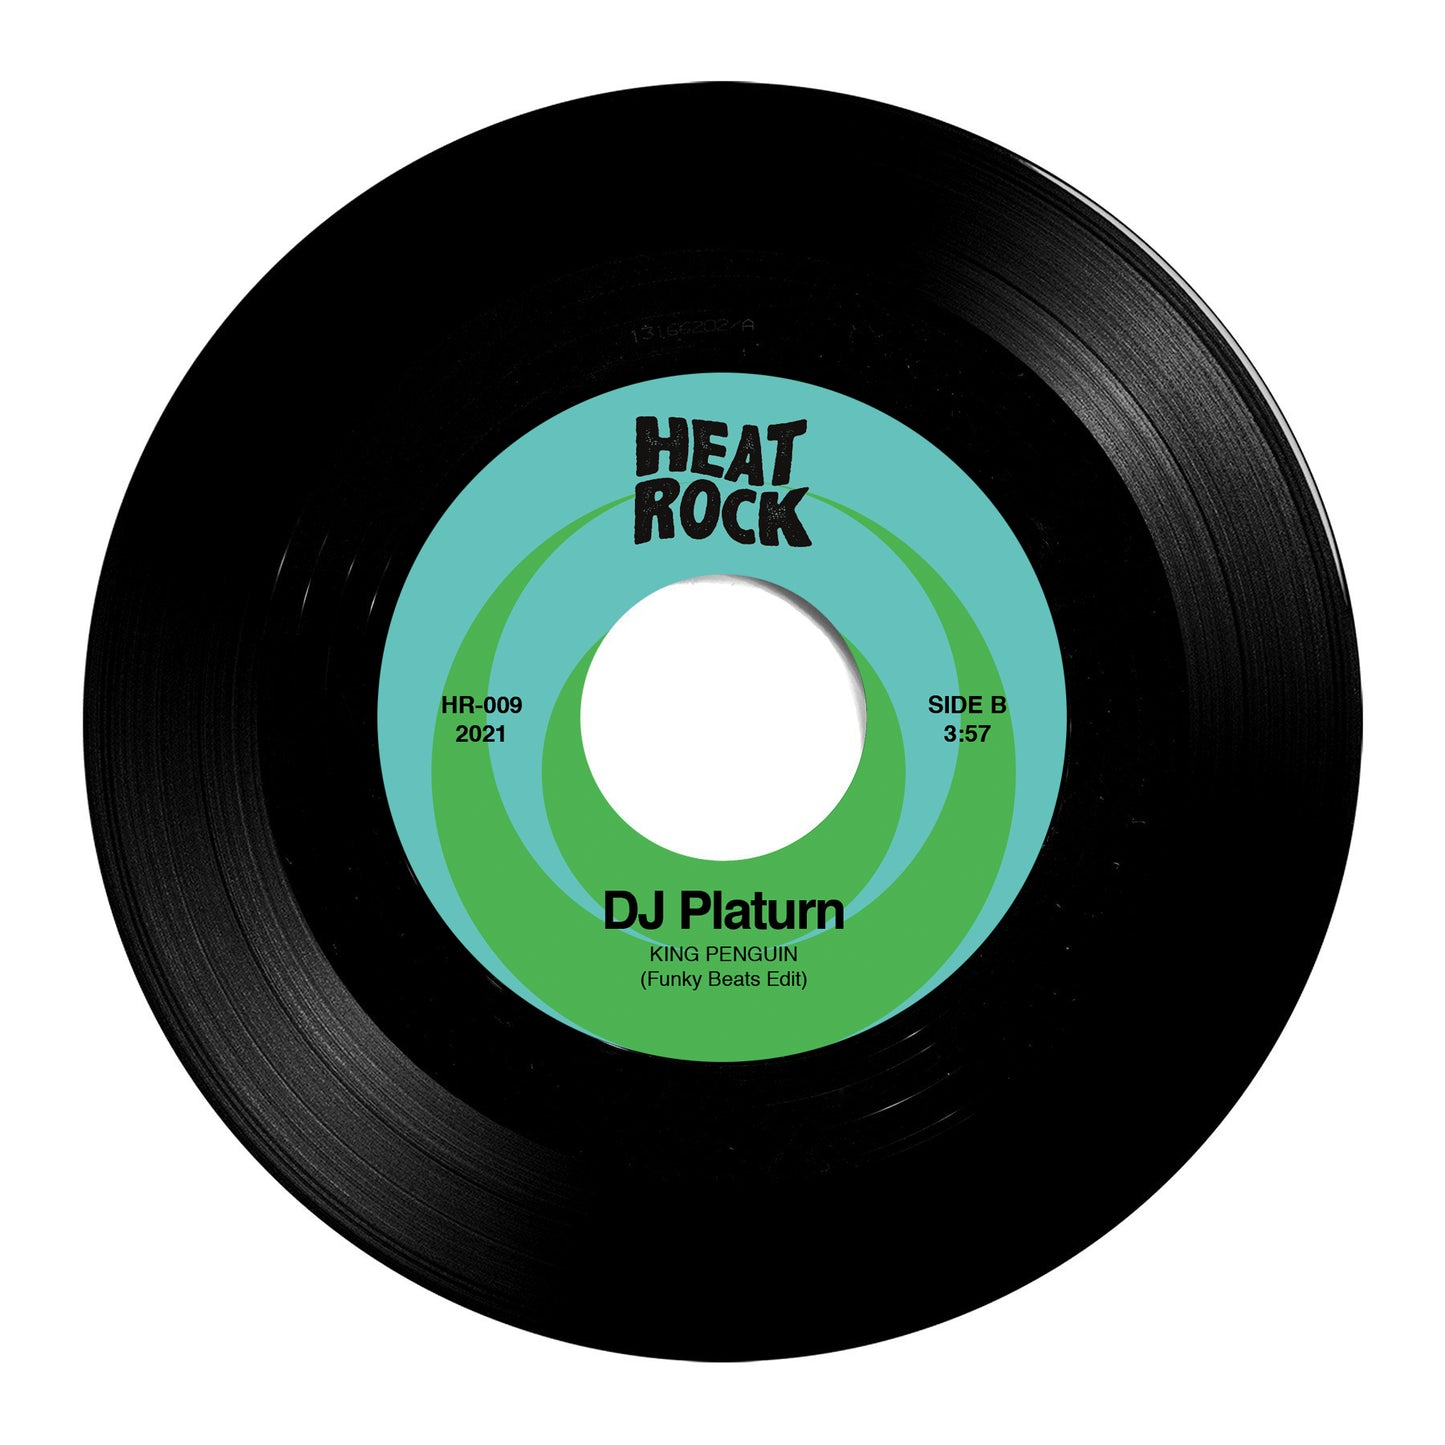 HR-009 - Altered Tapes - The Break Down / DJ Platurn - King Penguin - 7" Last 5